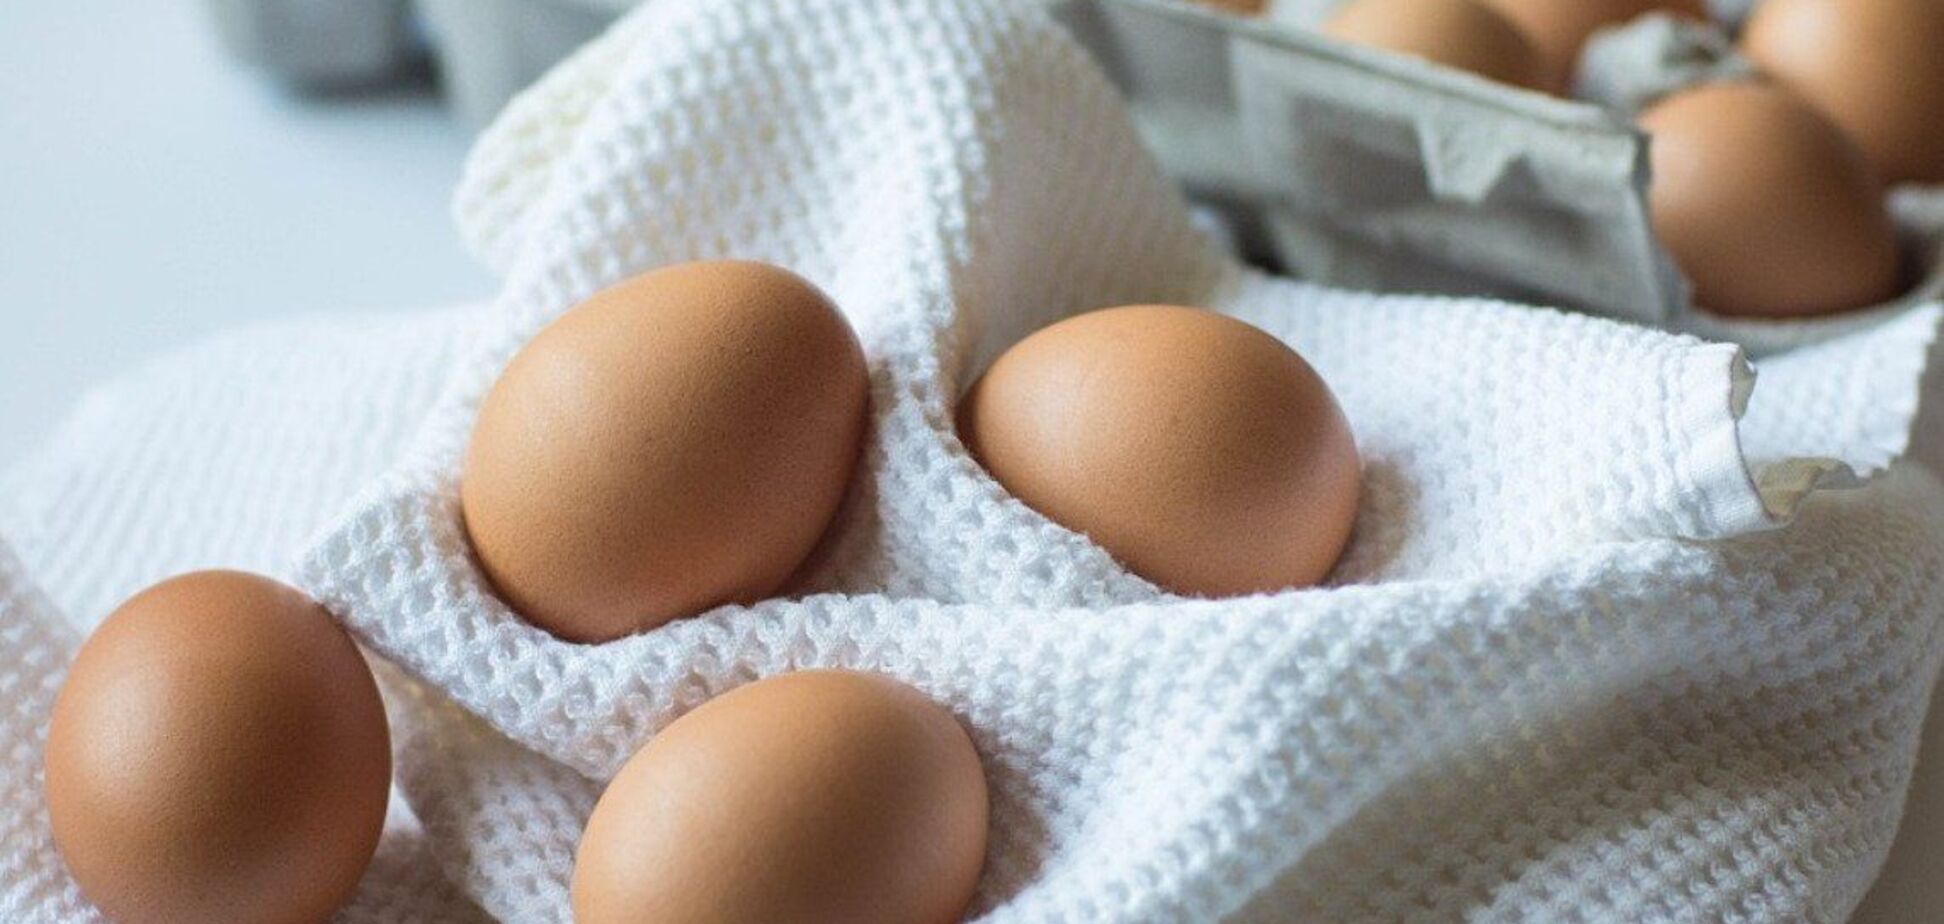 Що приготувати на сніданок з трьох яєць: дуже ситно і бюджетно